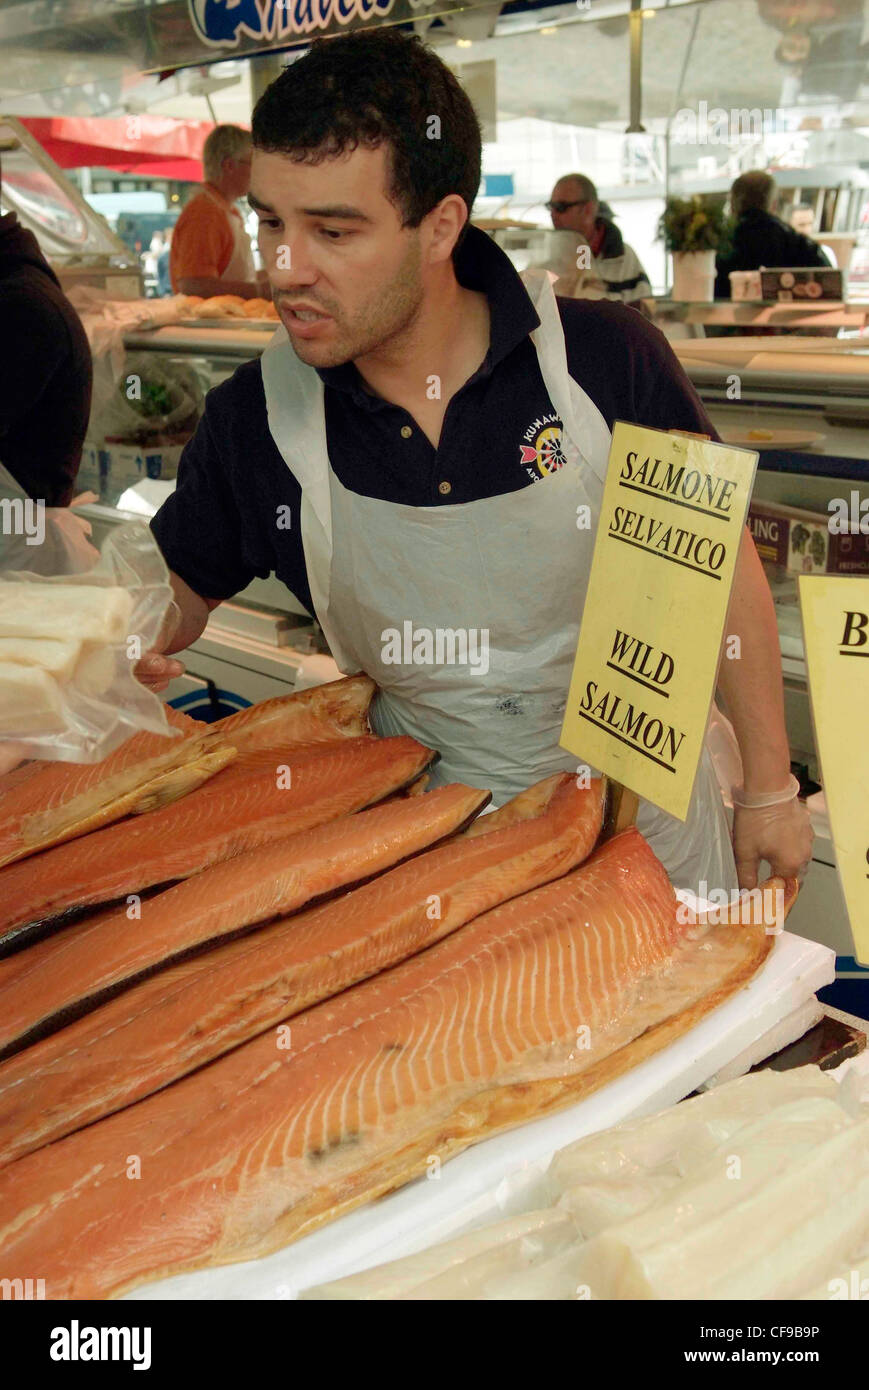 Norvegia Bergen Mercato del Pesce salmone selvatico affumicato in vendita Foto Stock